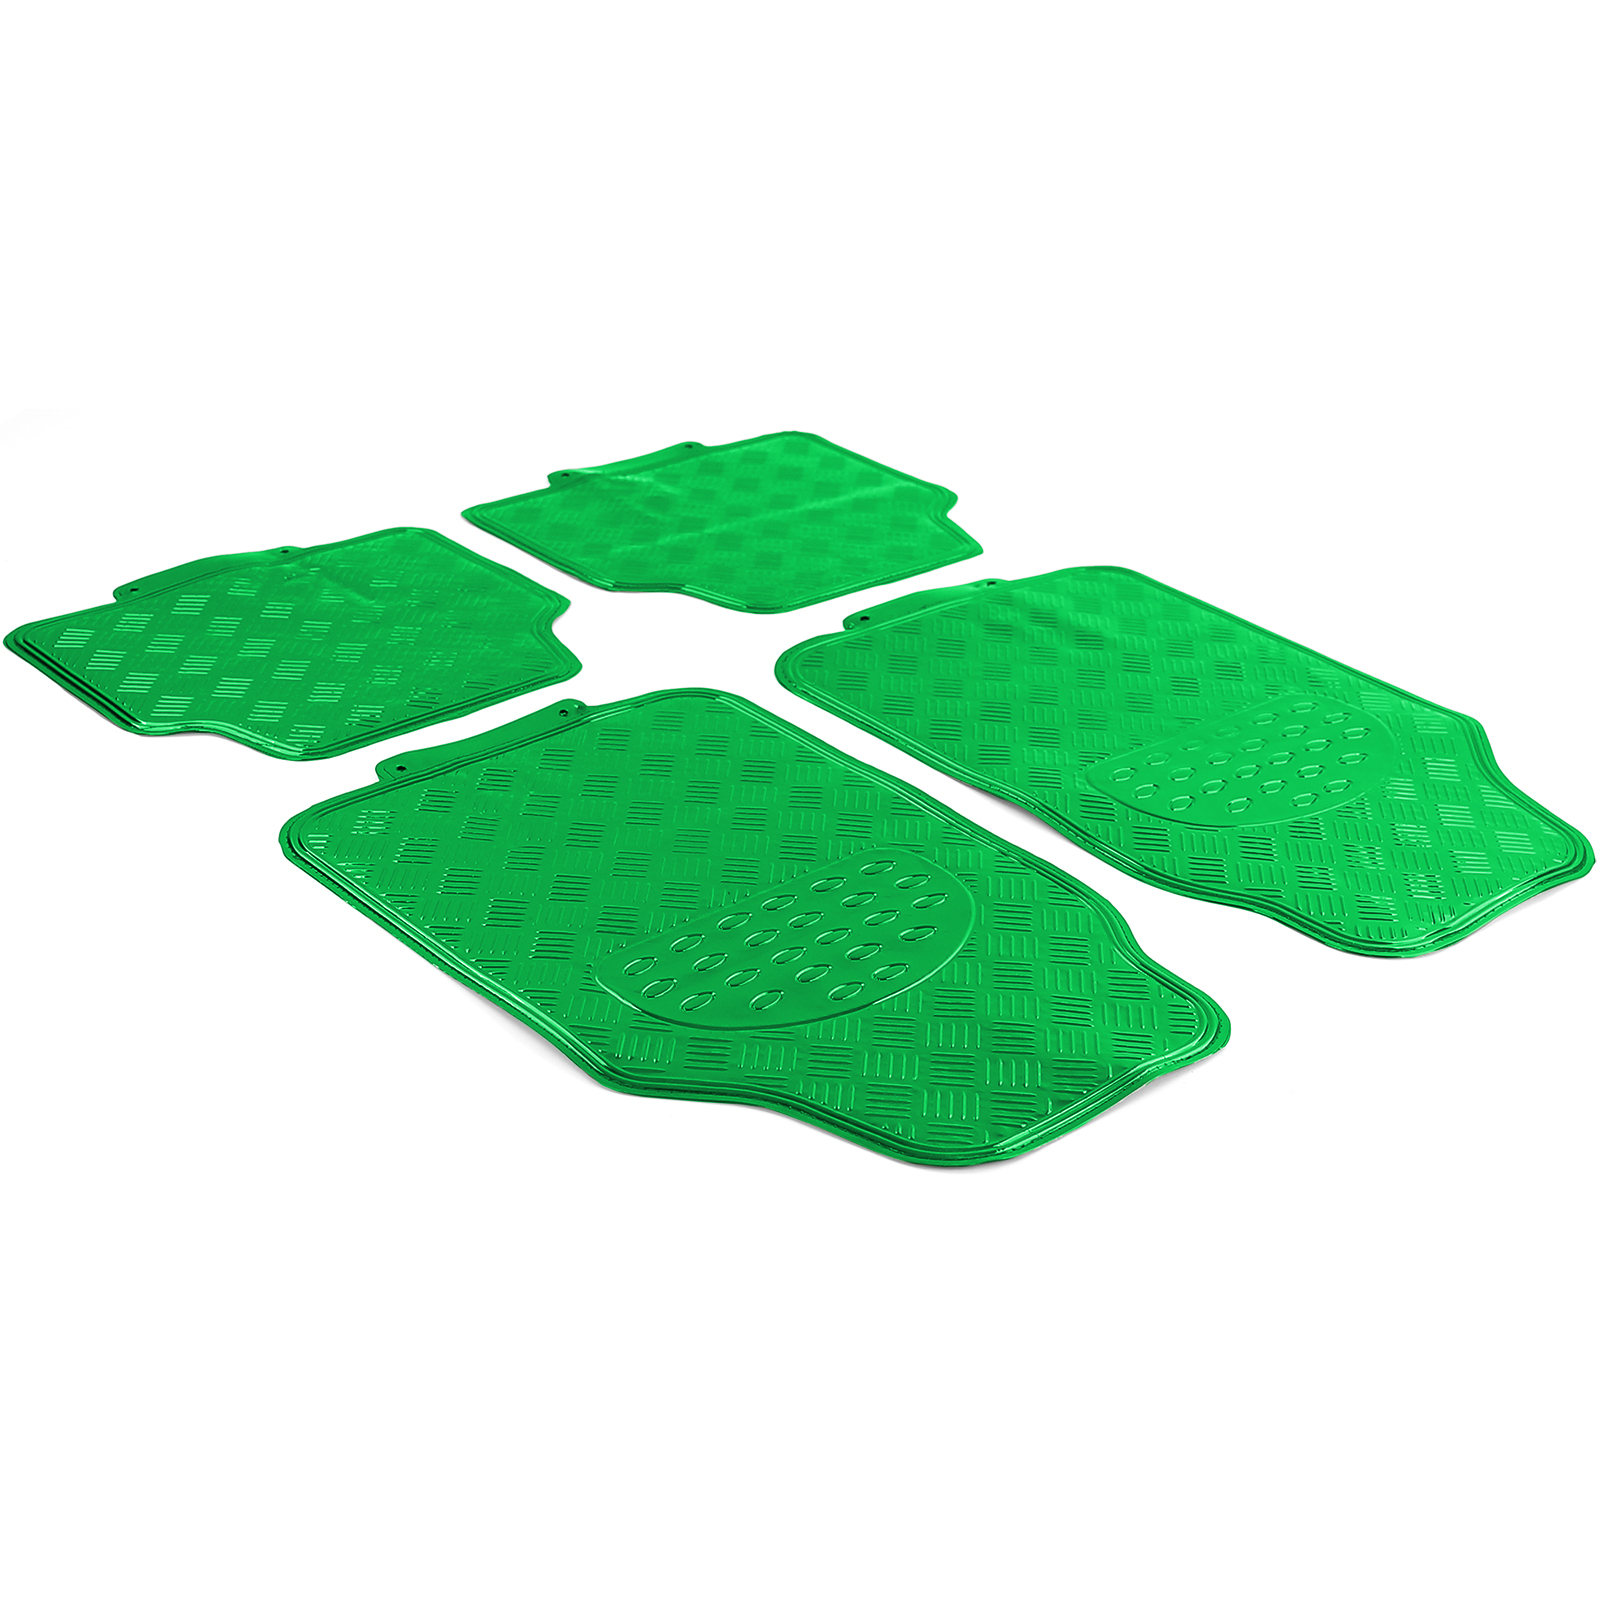 Auto Gummi Fußmatten universal Alu Riffelblech Optik 4-teilig Chrom Grün  kaufen